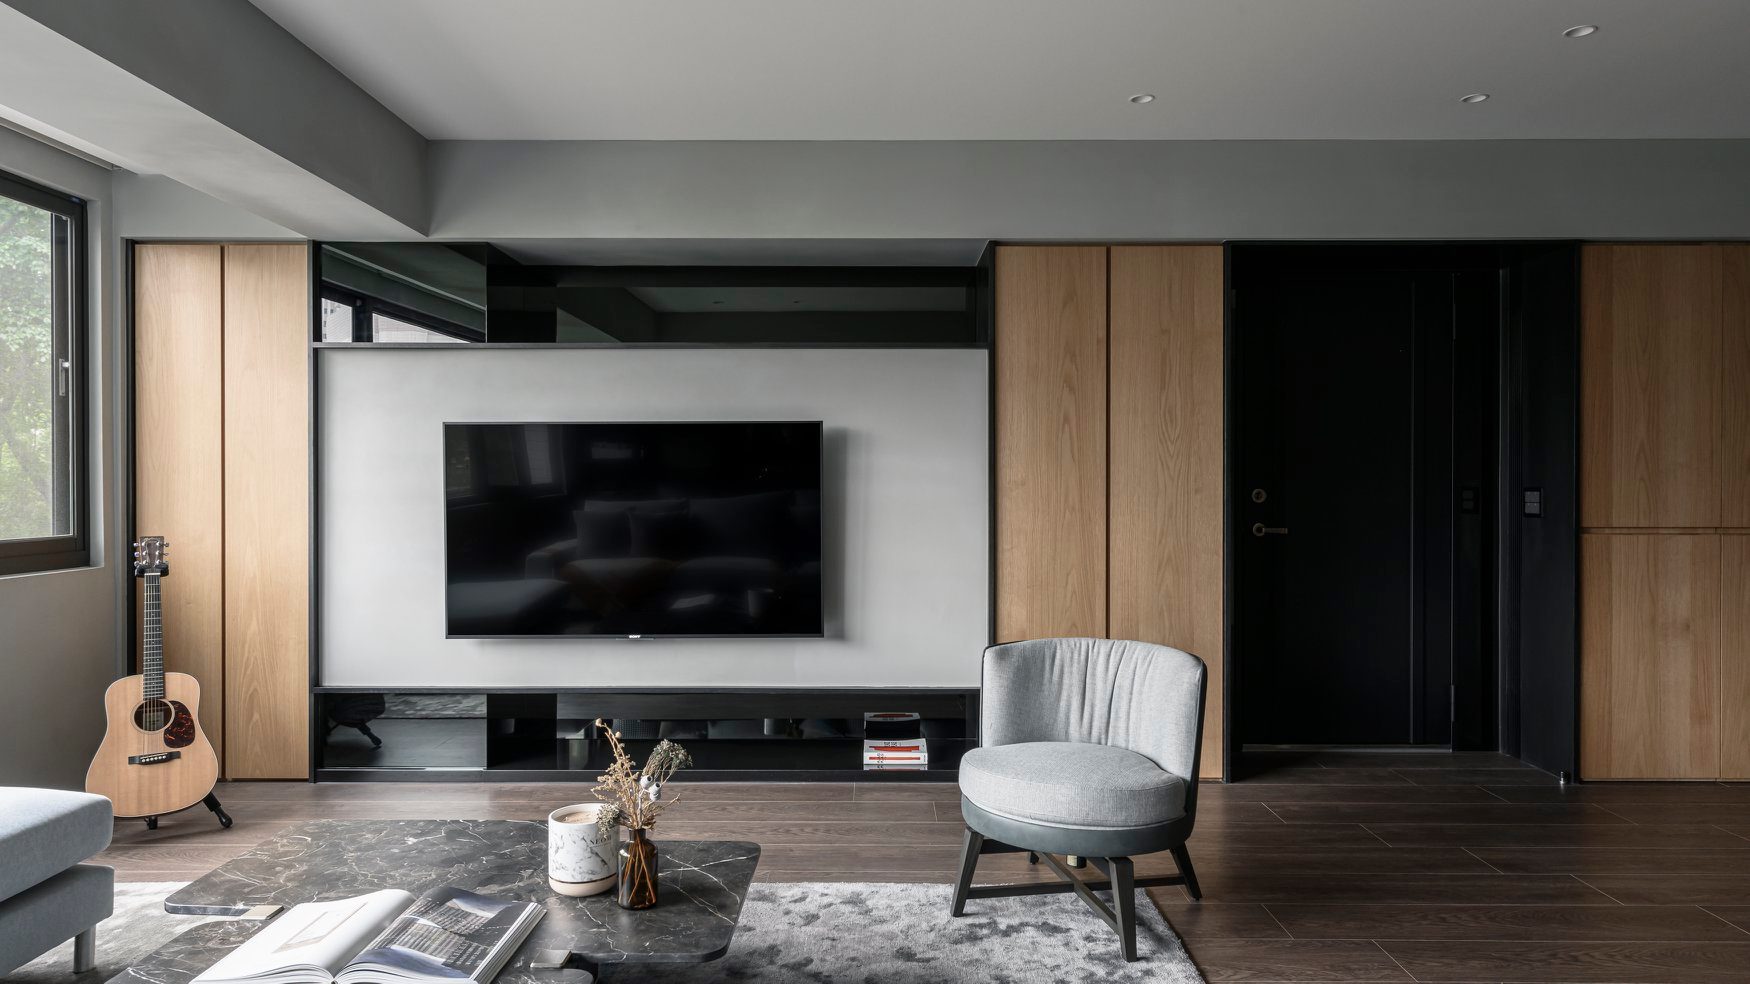 电视机背景令客厅空间质感更为饱满，木质元素的勾勒，大气从中展现。